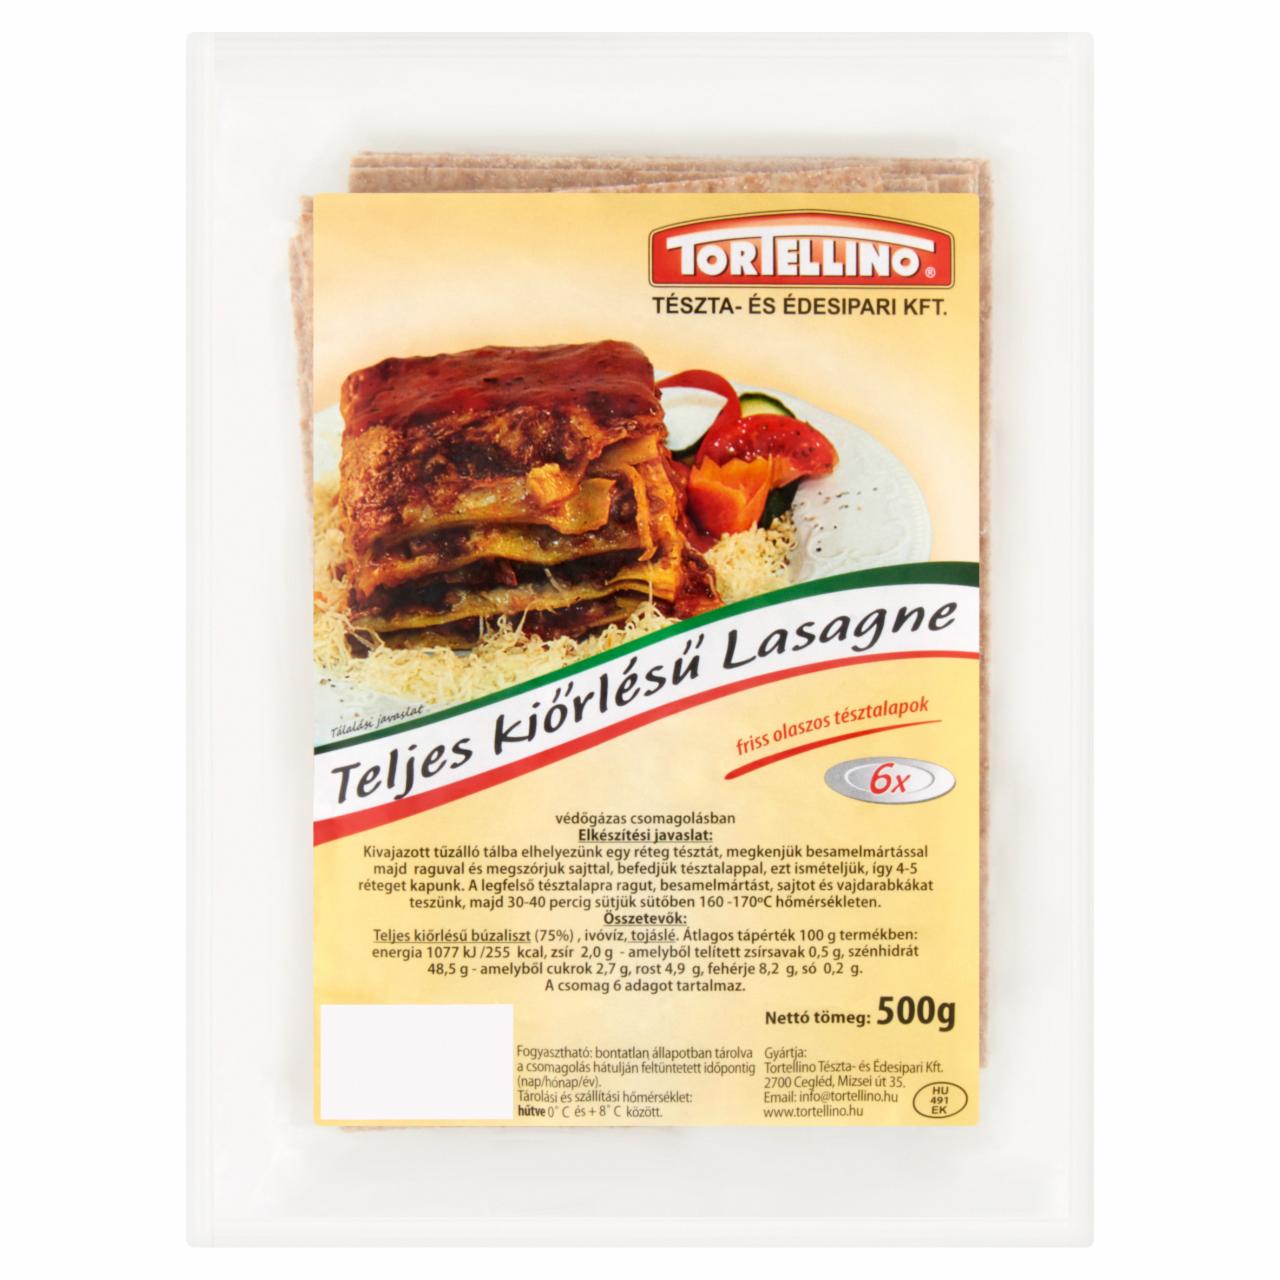 Képek - Tortellino teljes kiőrlésű lasagne 500 g